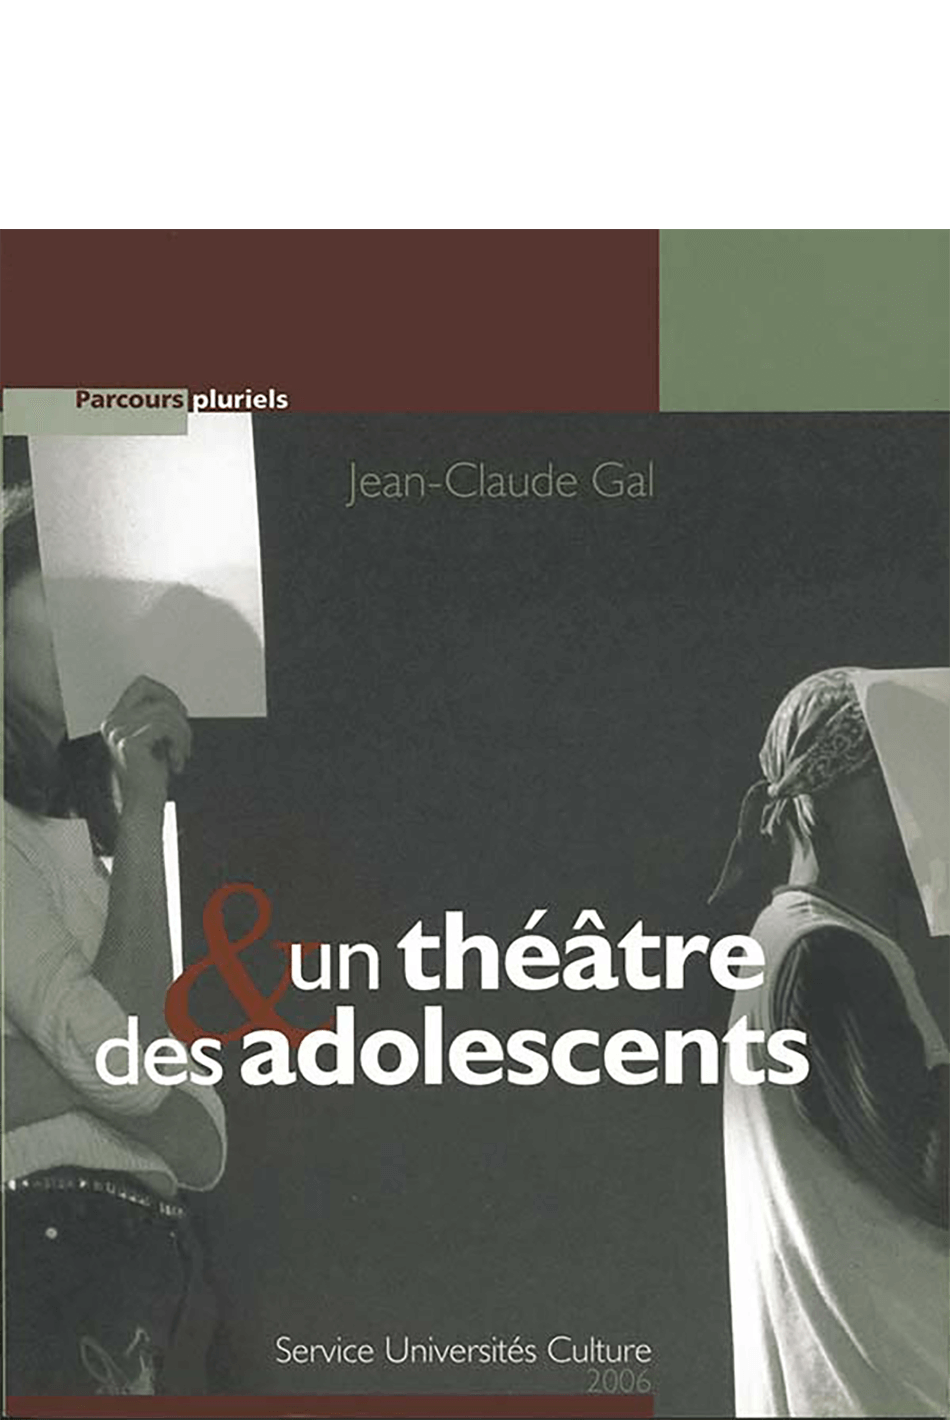 Un théâtre et des adolescents